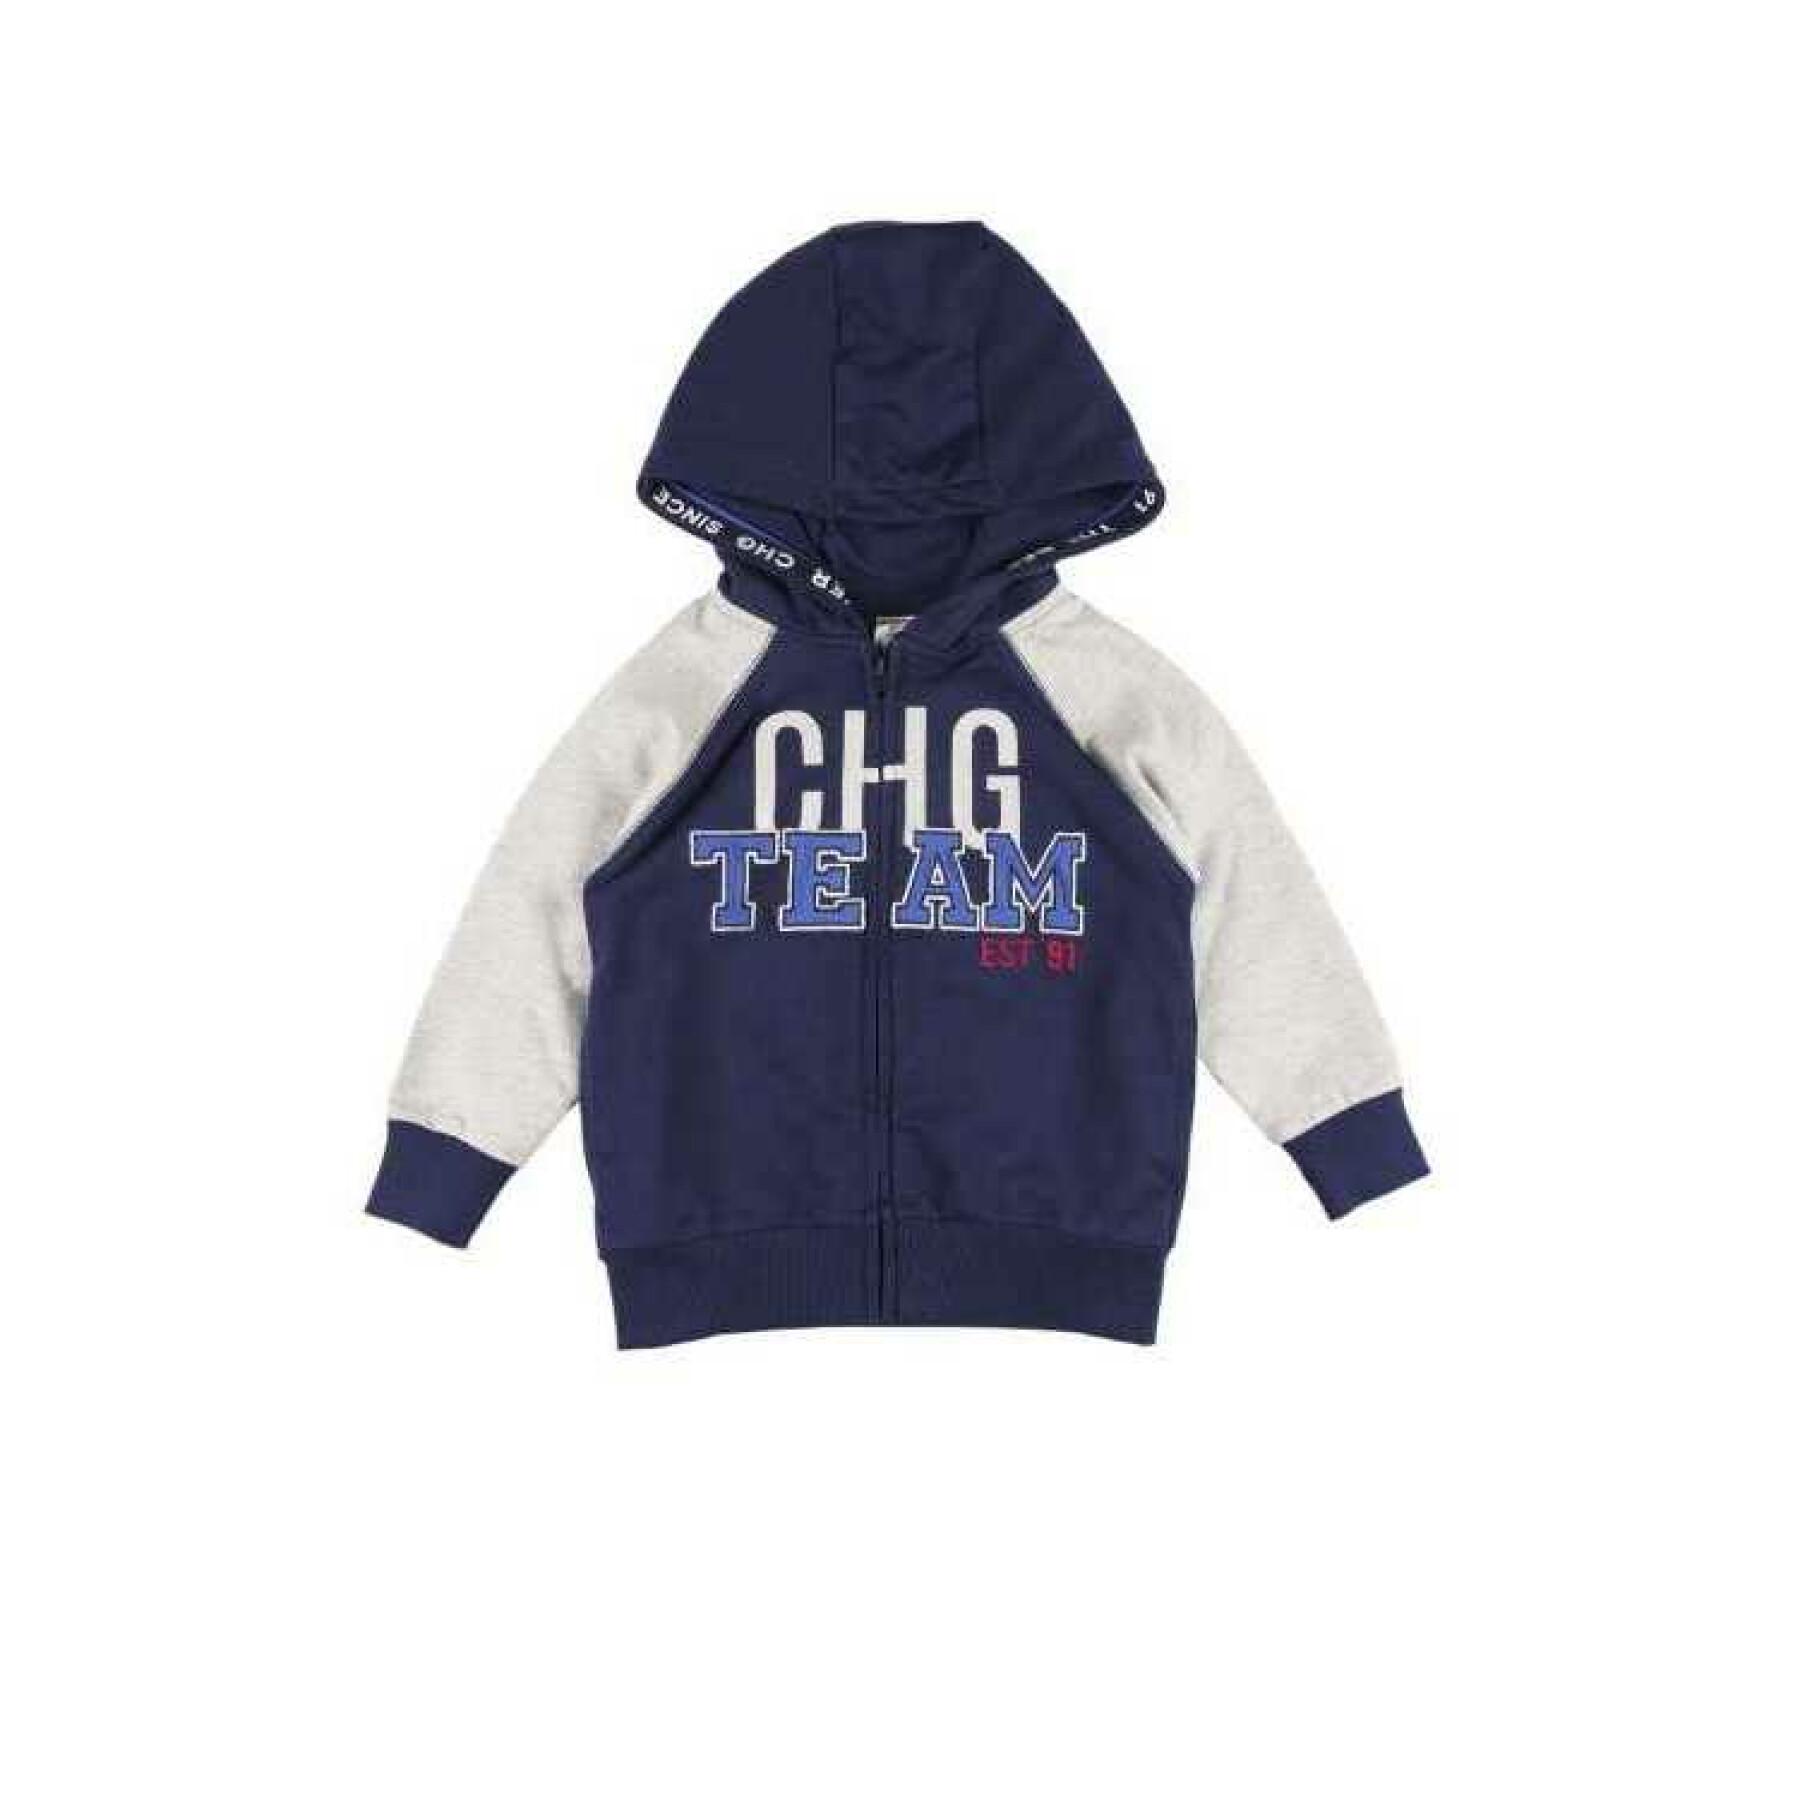 Child hoodie Charanga Rortivo